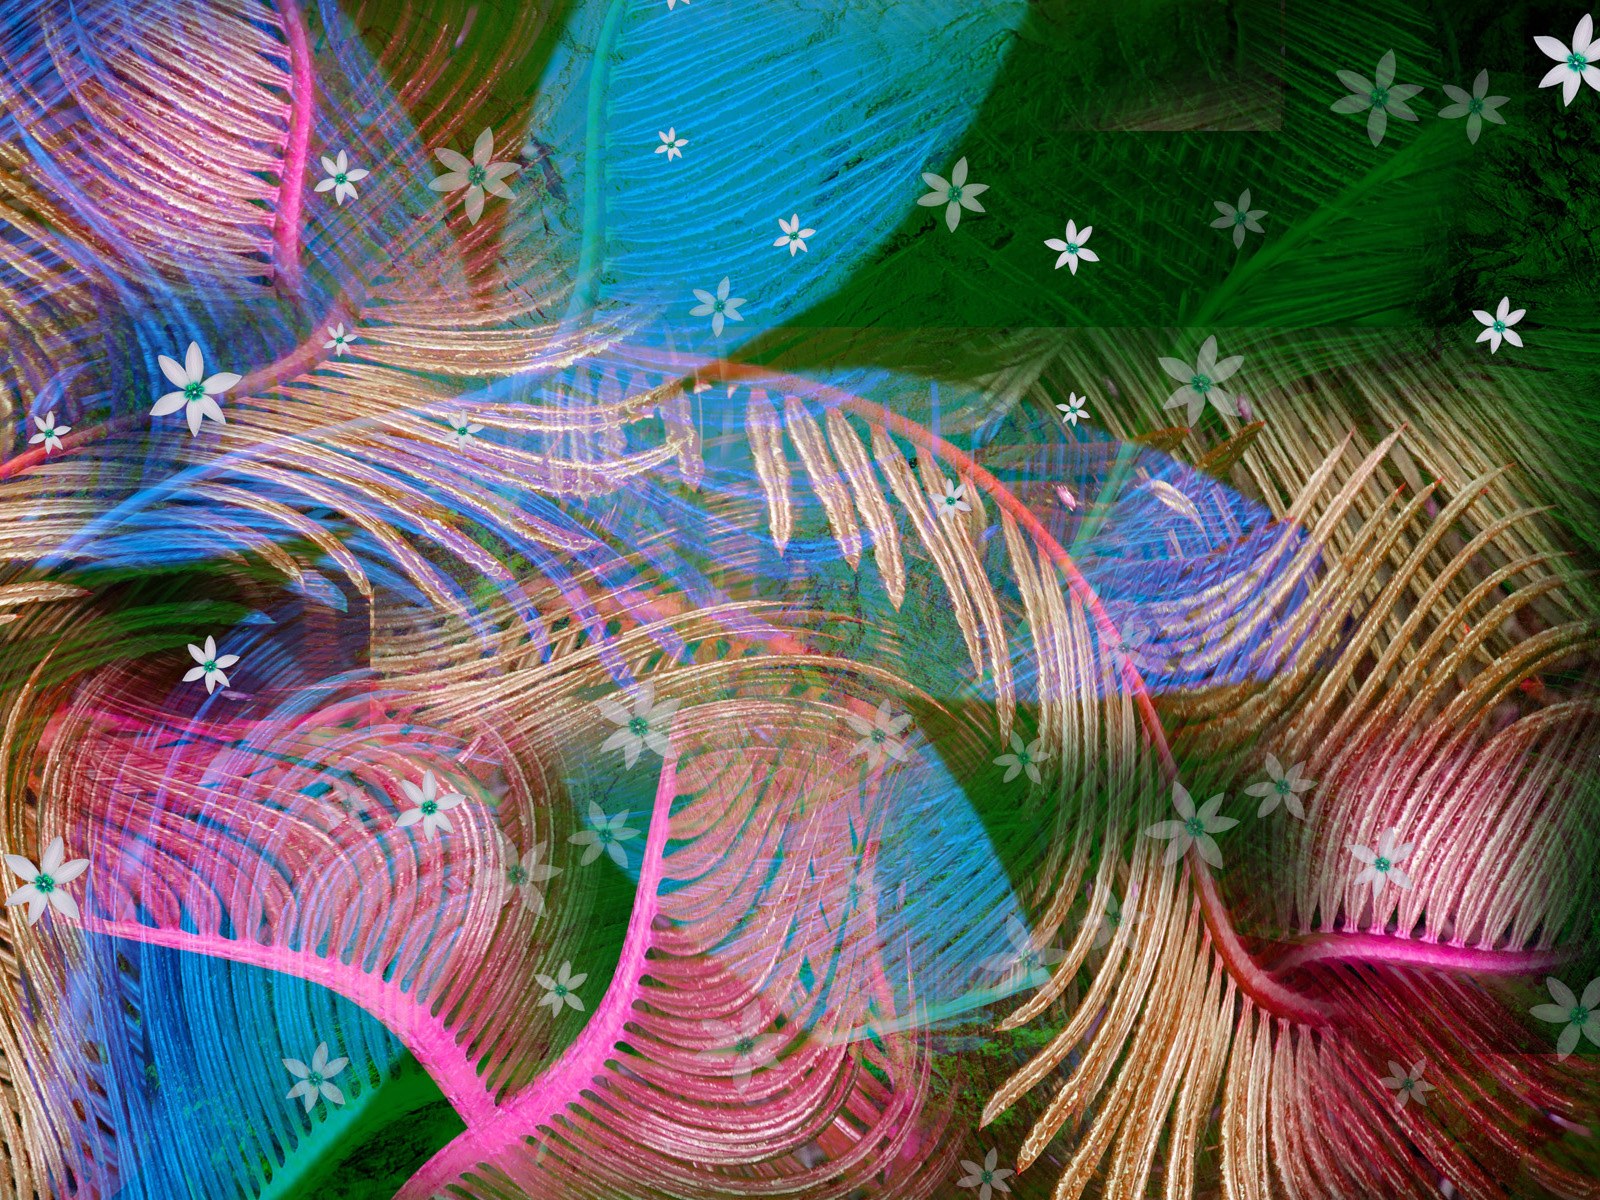 壁纸1600x1200 抽象花卉图案设计壁纸 电脑花卉绘画壁纸 电脑花卉绘画图片 电脑花卉绘画素材 花卉壁纸 花卉图库 花卉图片素材桌面壁纸